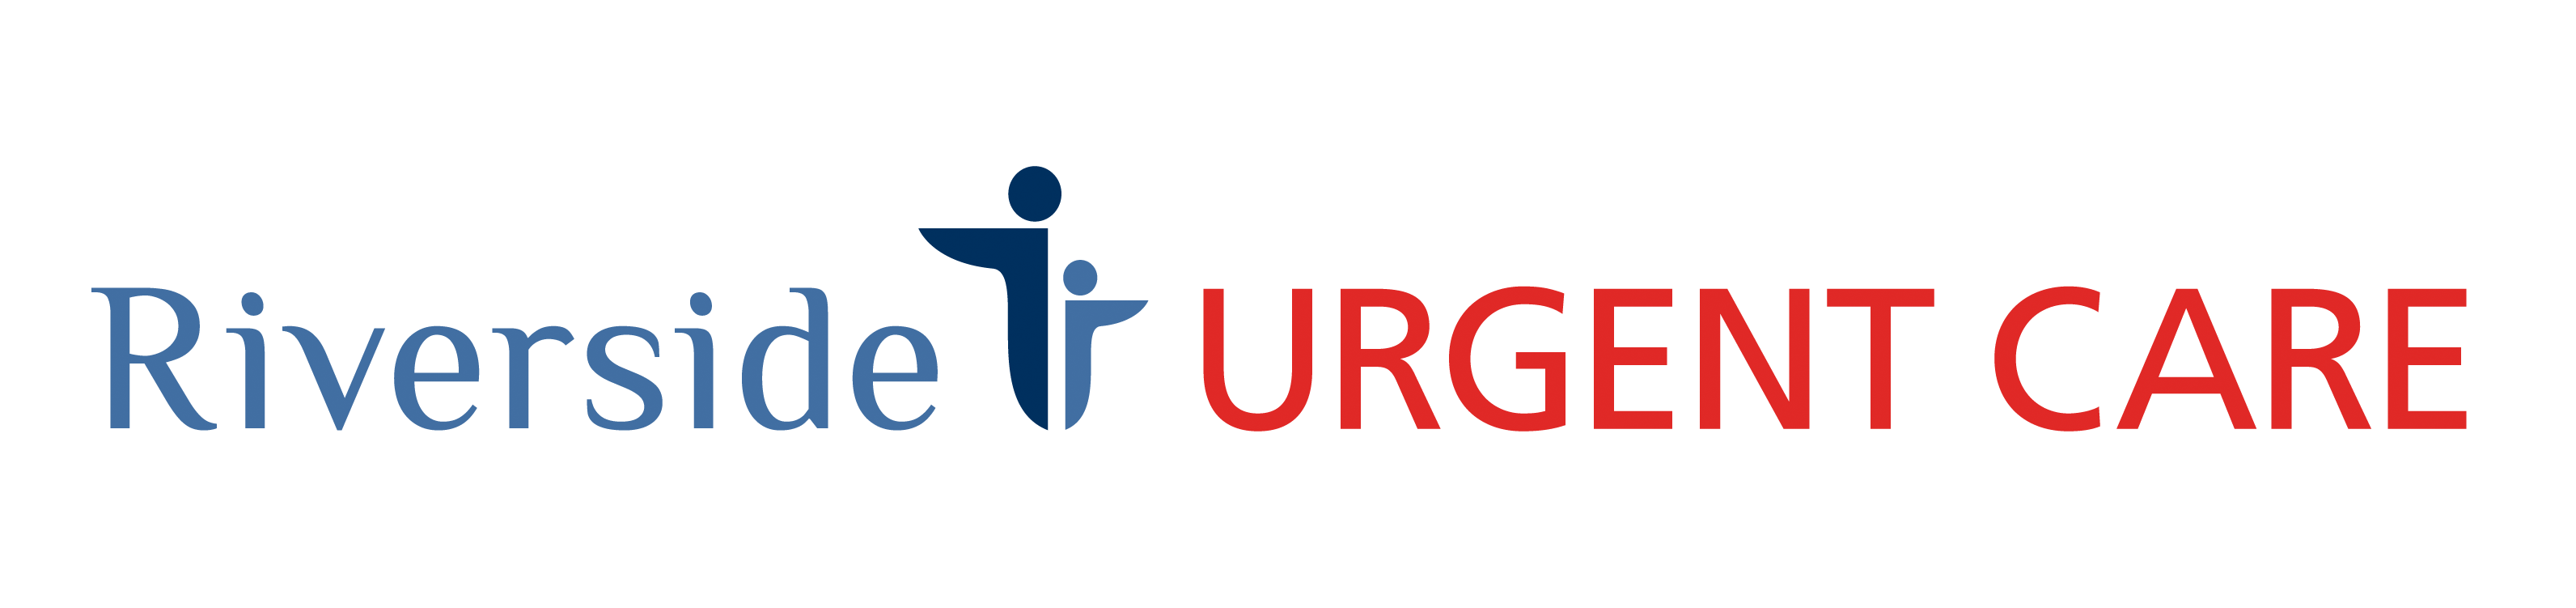 Riverside Urgent Care - Hazlet Logo